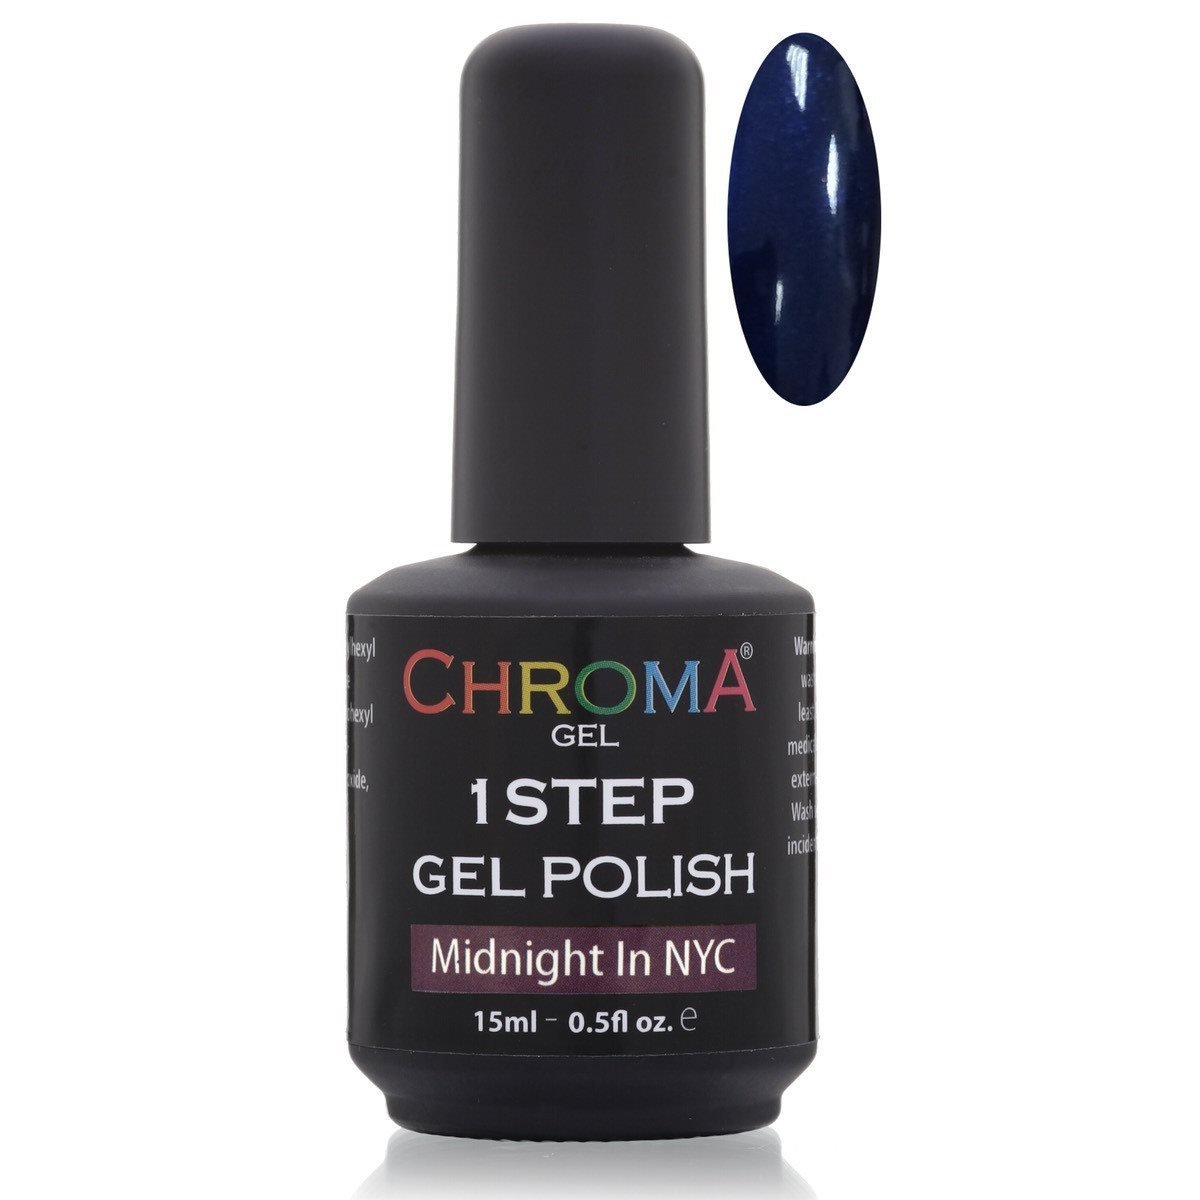 Chroma Gel 1 Step Gel Polish Midnight in NYC No.30 - Chroma Gel